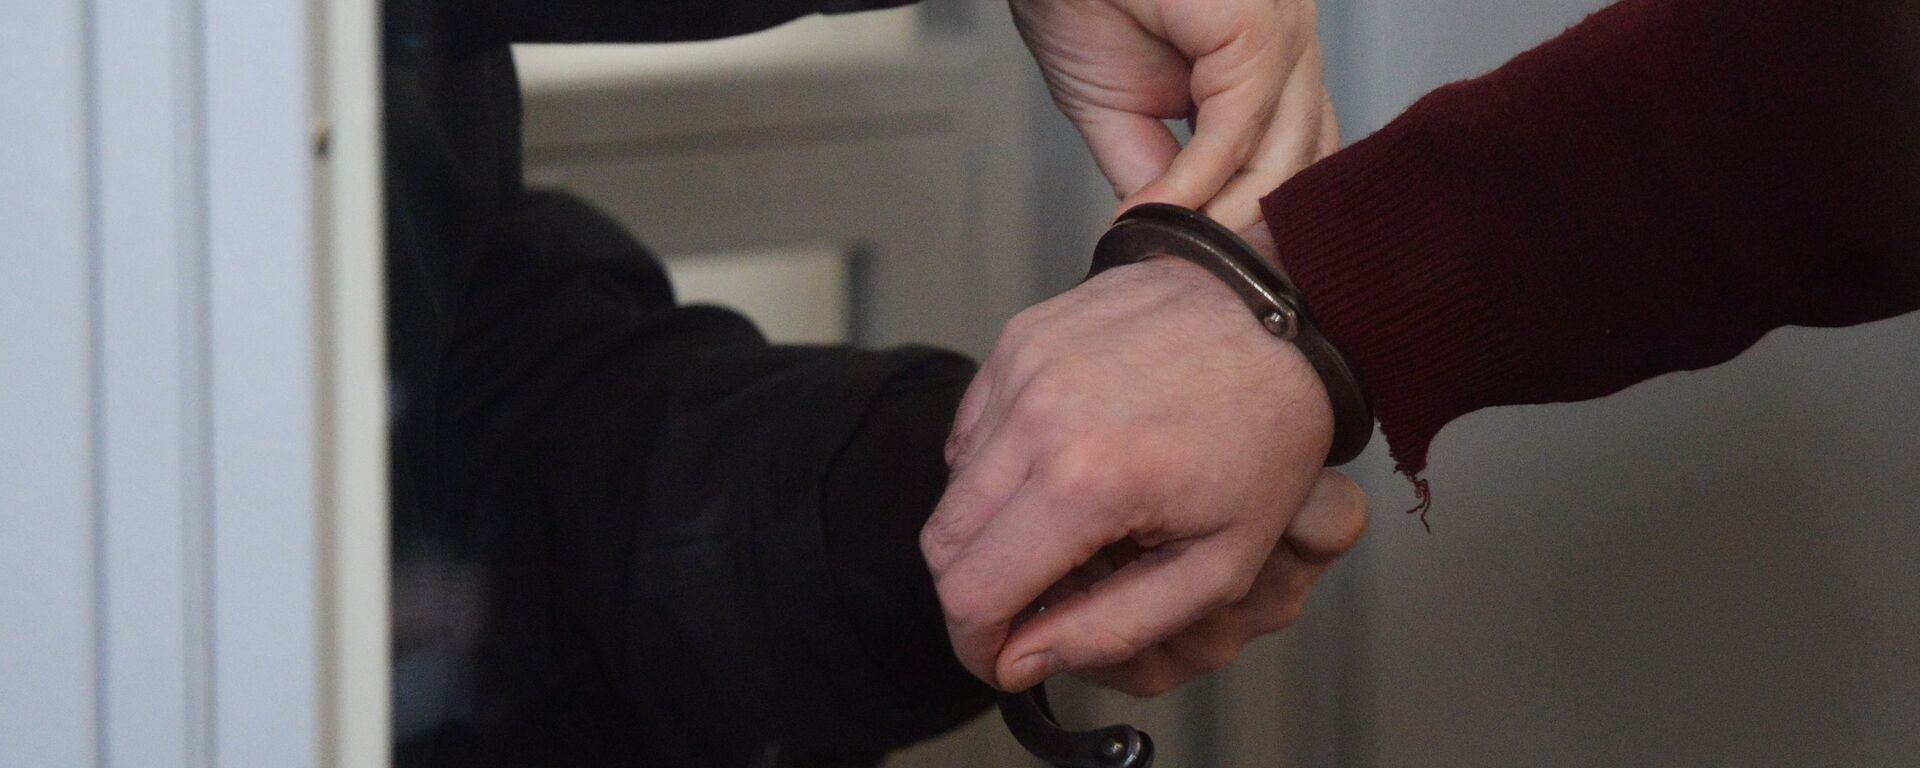 Сотрудник правоохранительных органов снимает наручники, архивное фото - Sputnik Қазақстан, 1920, 16.06.2021